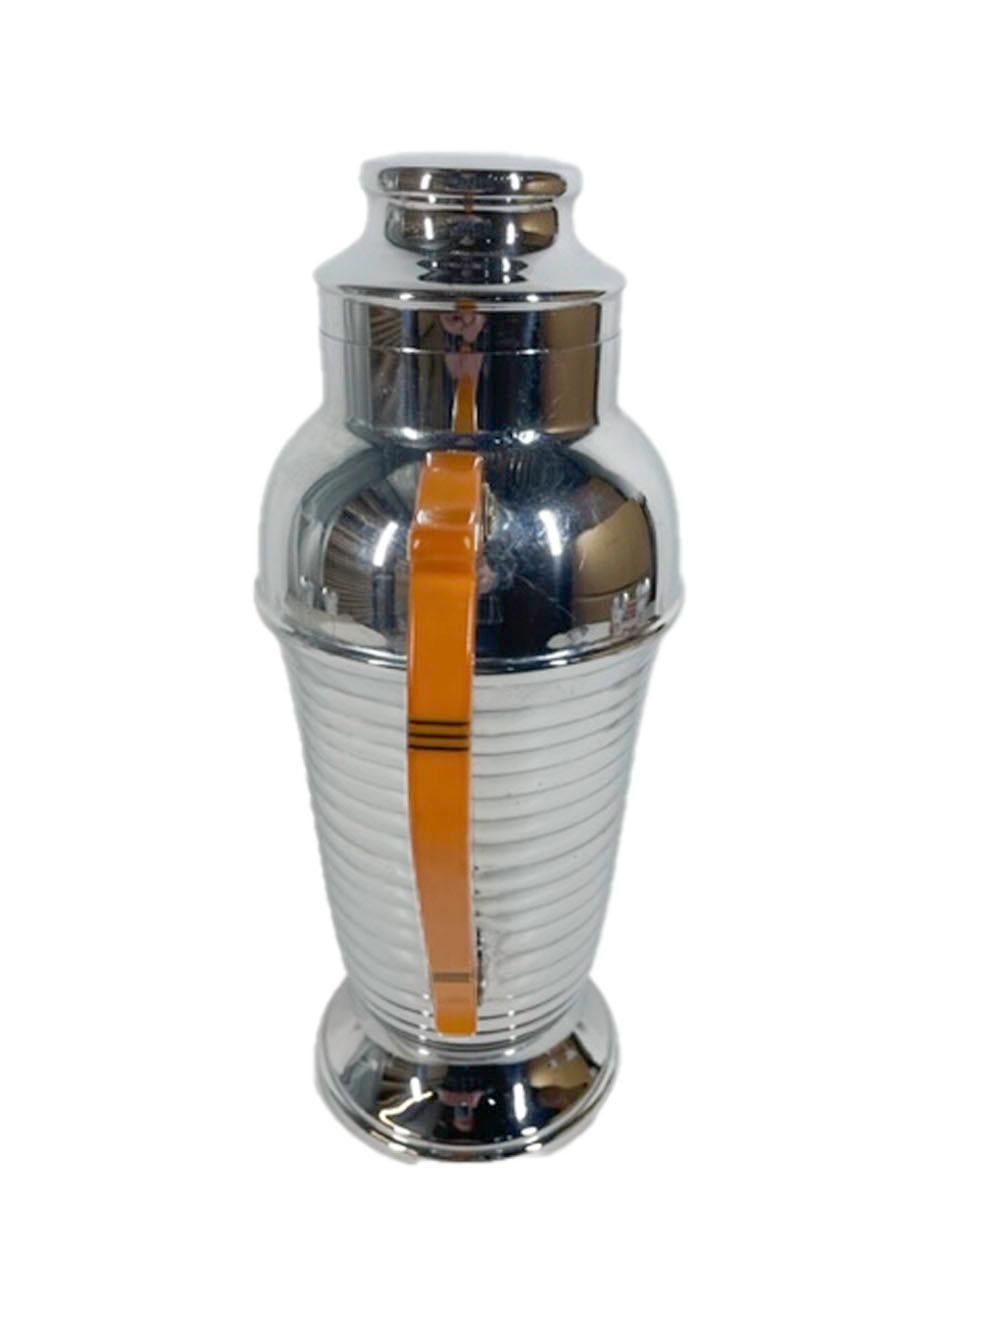 Art-Deco-Cocktailshaker-Set aus Chrom und Bakelit, bestehend aus einem urnförmigen Shaker und vier Cocktailgläsern mit Stiel. Der Shaker hat einen Griff aus Bakelit mit geschwärzten, eingeritzten Linien und einen gerippten Körper, die Gläser mit